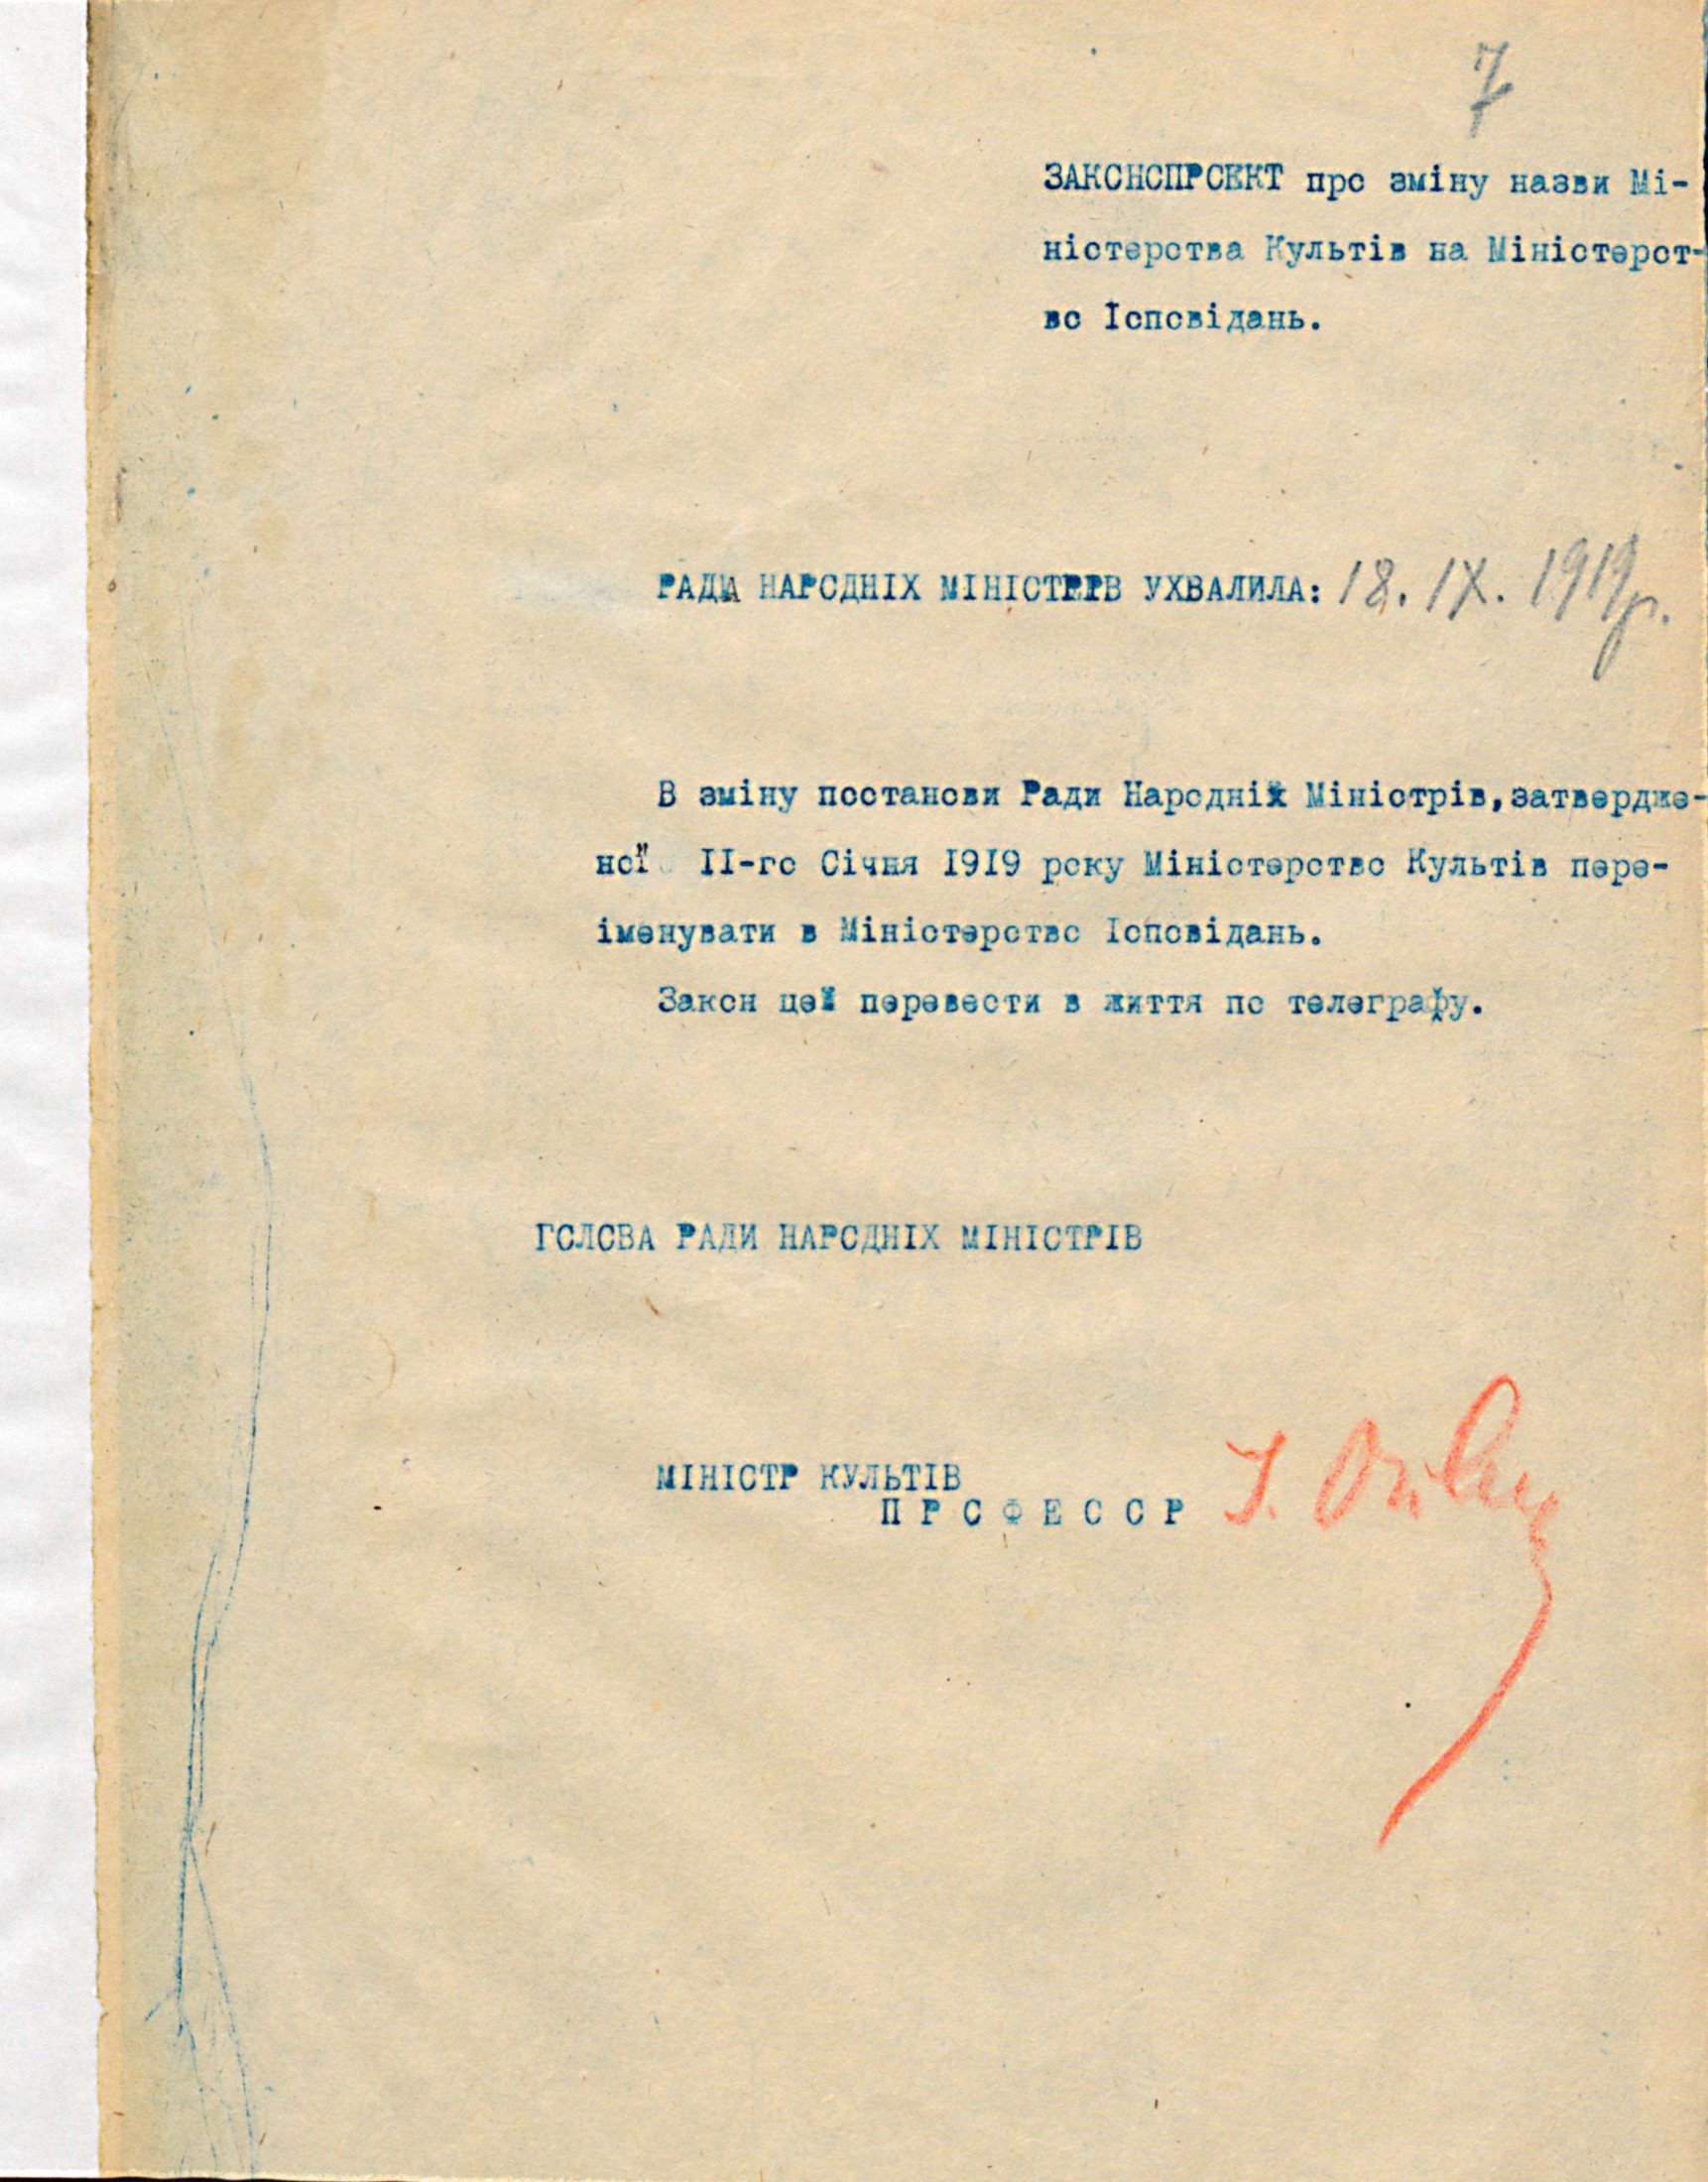 Законопроєкт про зміну назви Міністерства культів на Міністерство ісповідань, підписаний І. Огієнком. Вересень 1919 р.